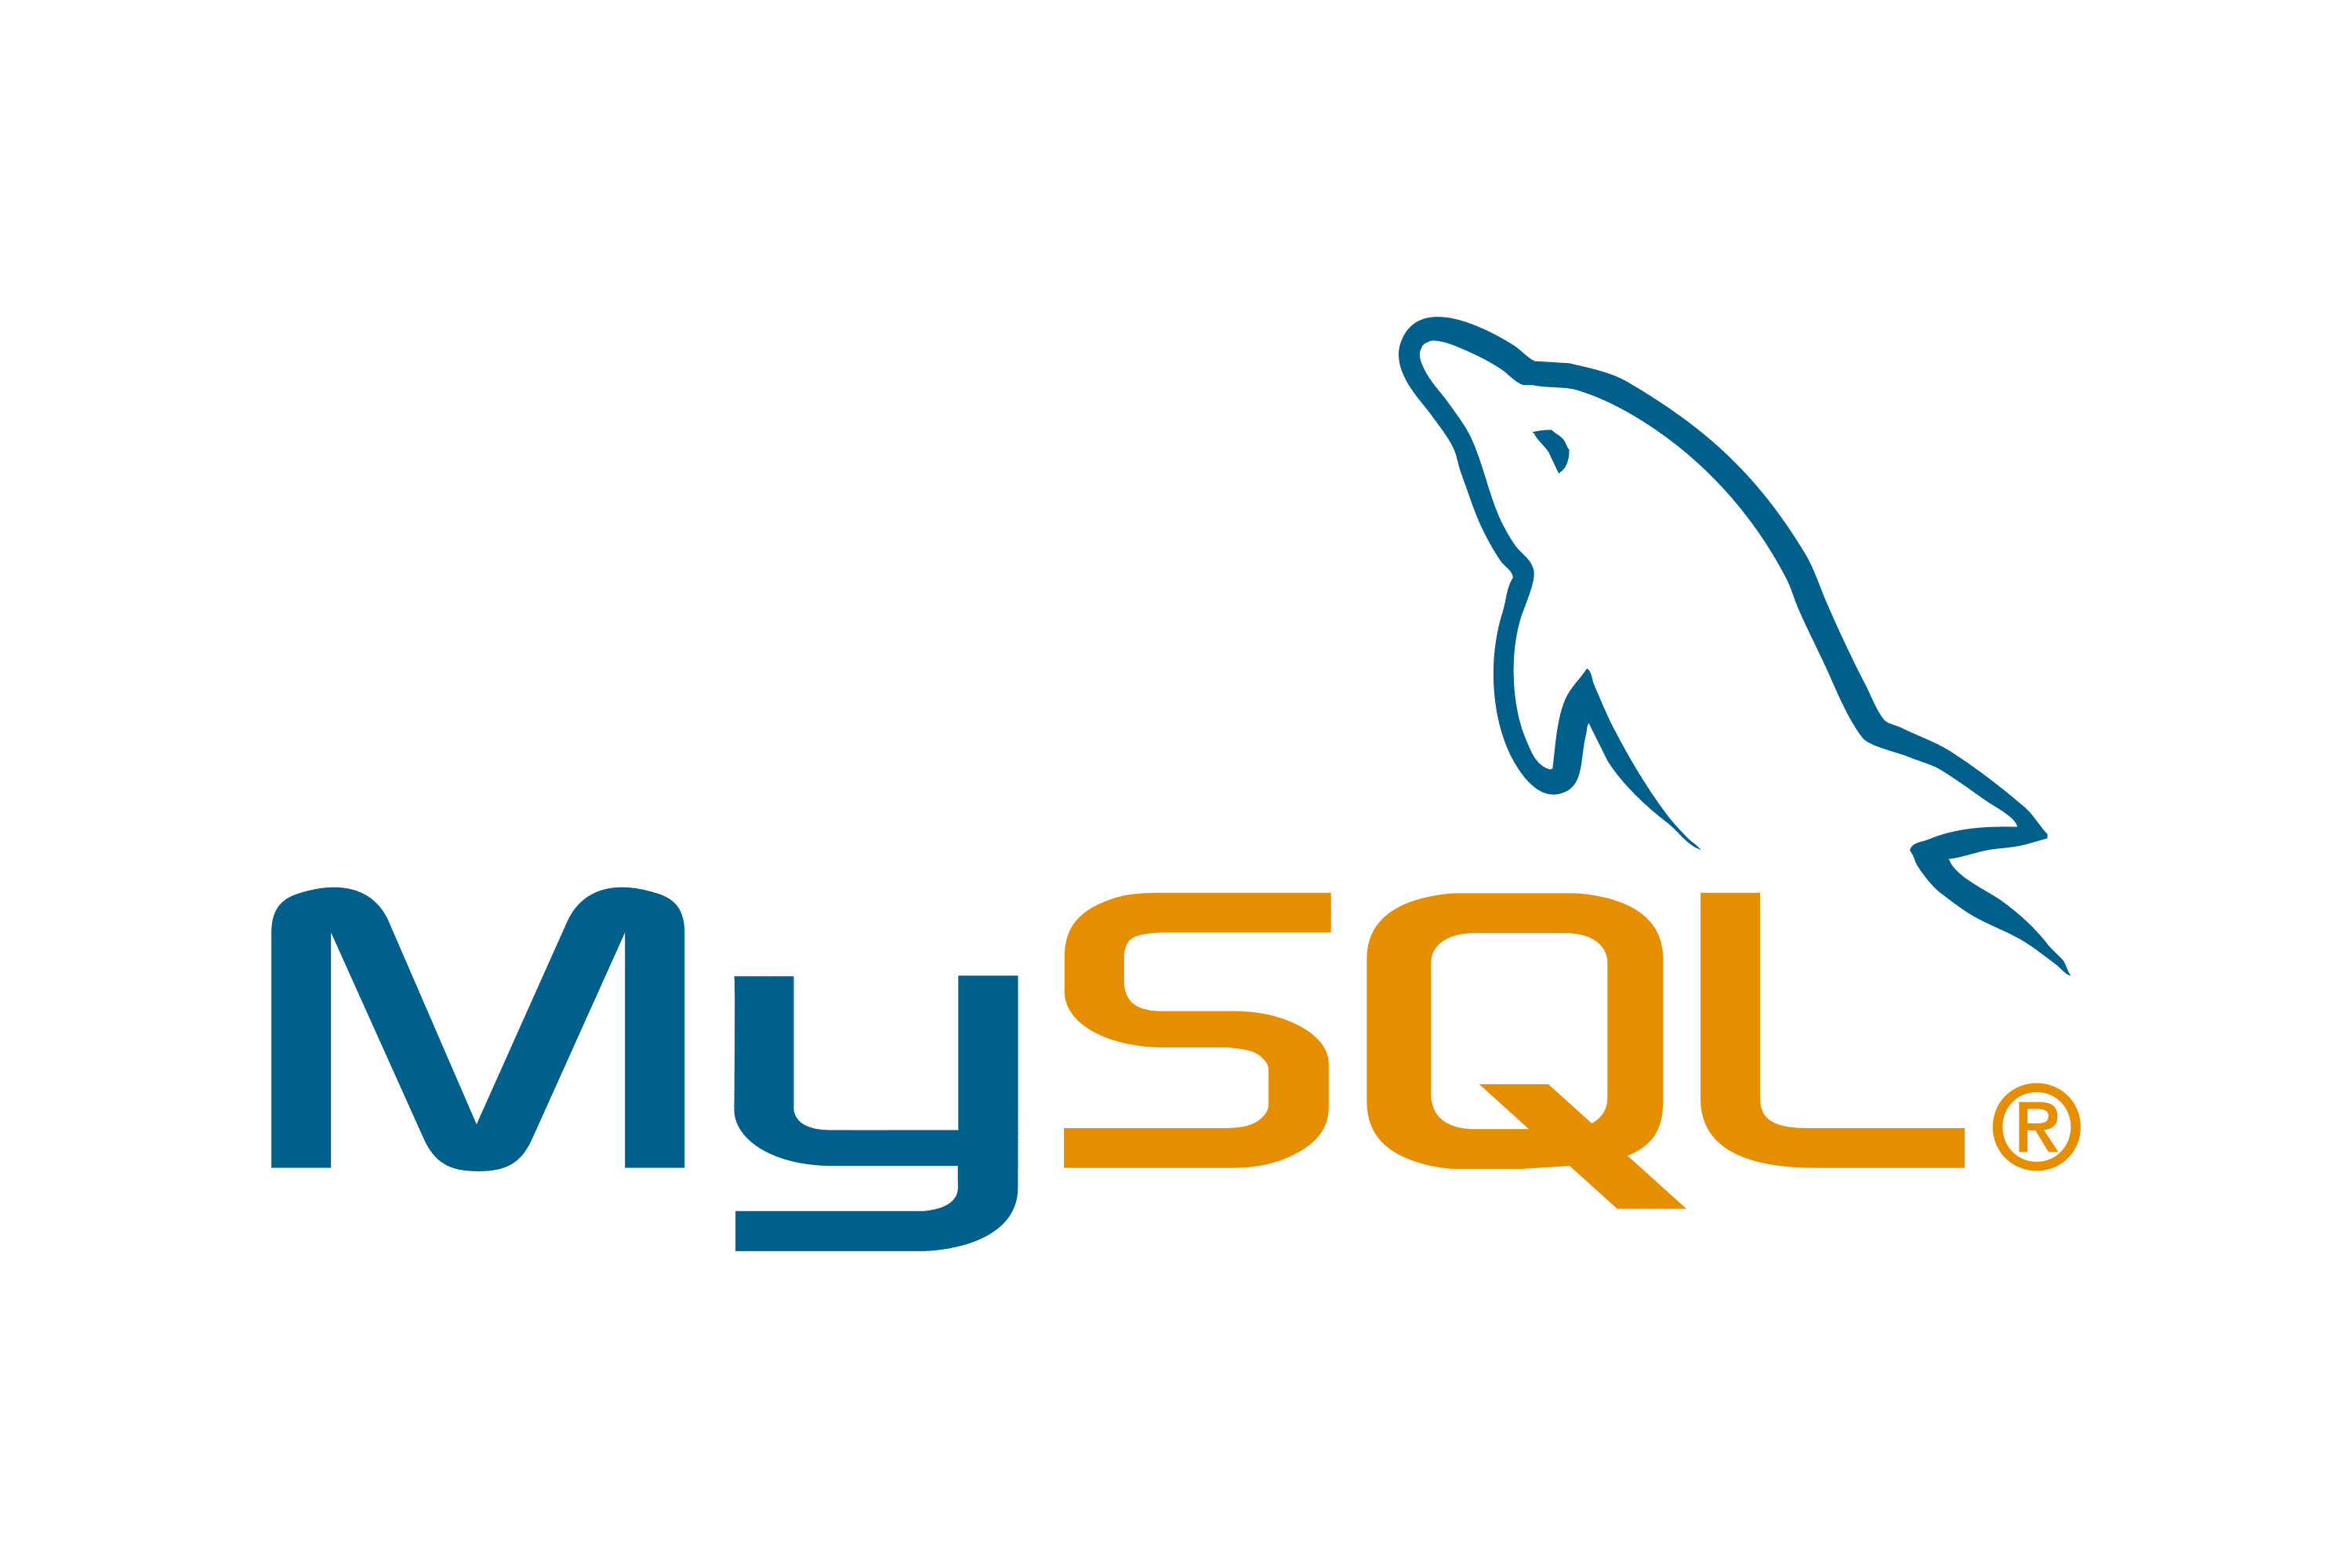 Das MySQL-Logo, das den Text unter einem gekippten, stilisierten blauen Delfinkörper zeigt.